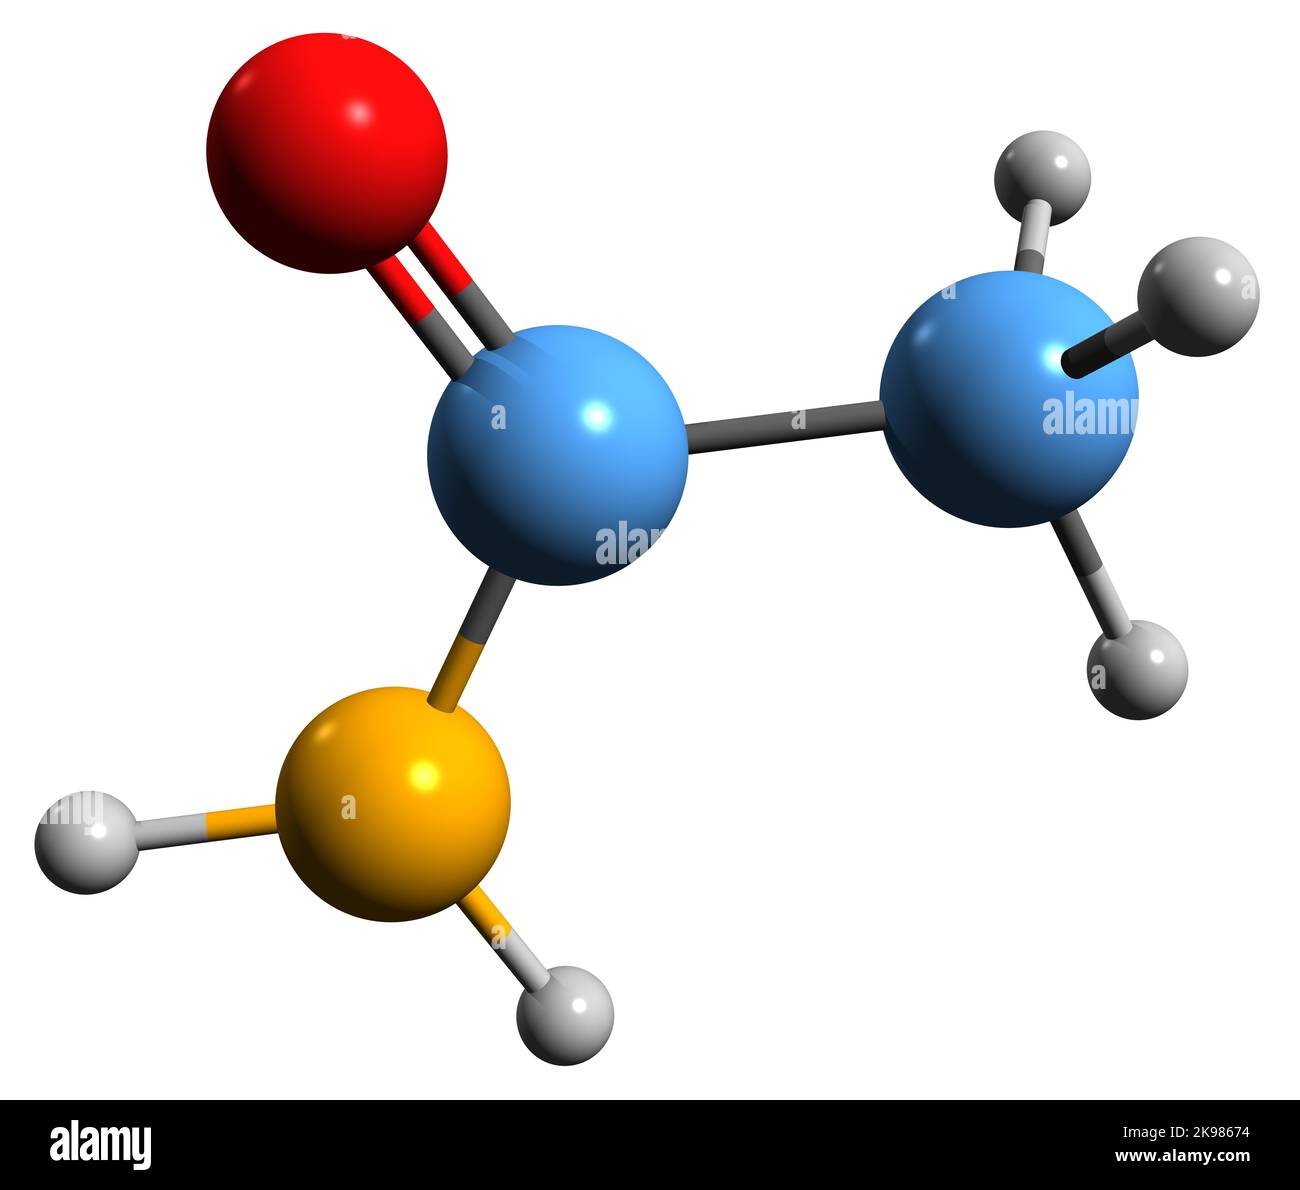 3d Imagen De La Fórmula Esquelética De Acetamida Estructura Química Molecular De La Amida De